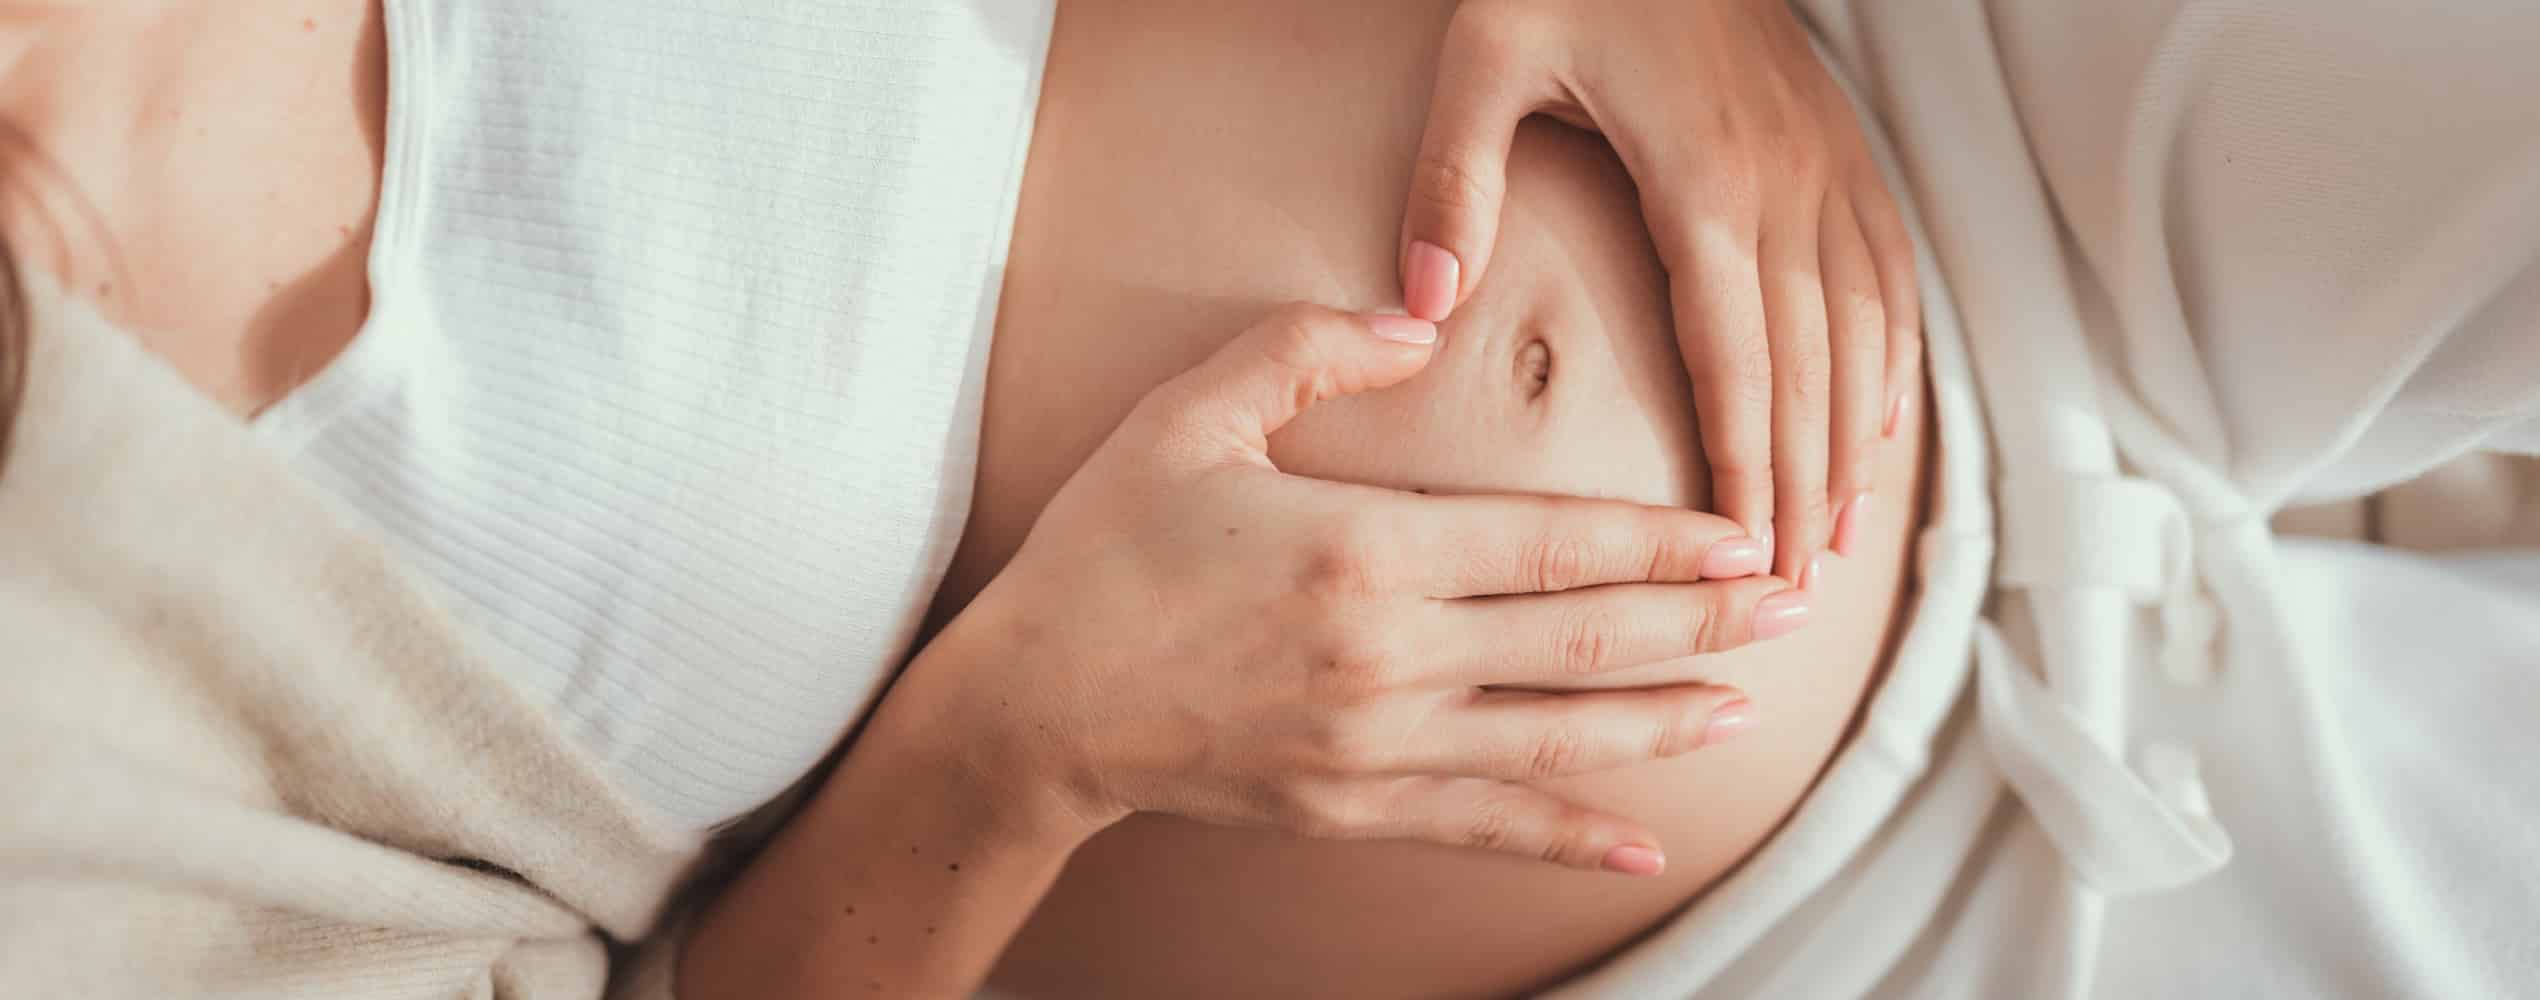 Peut-on suivre des séances de cryolipolyse après sa grossesse ? | Dr Tribout | Amiens